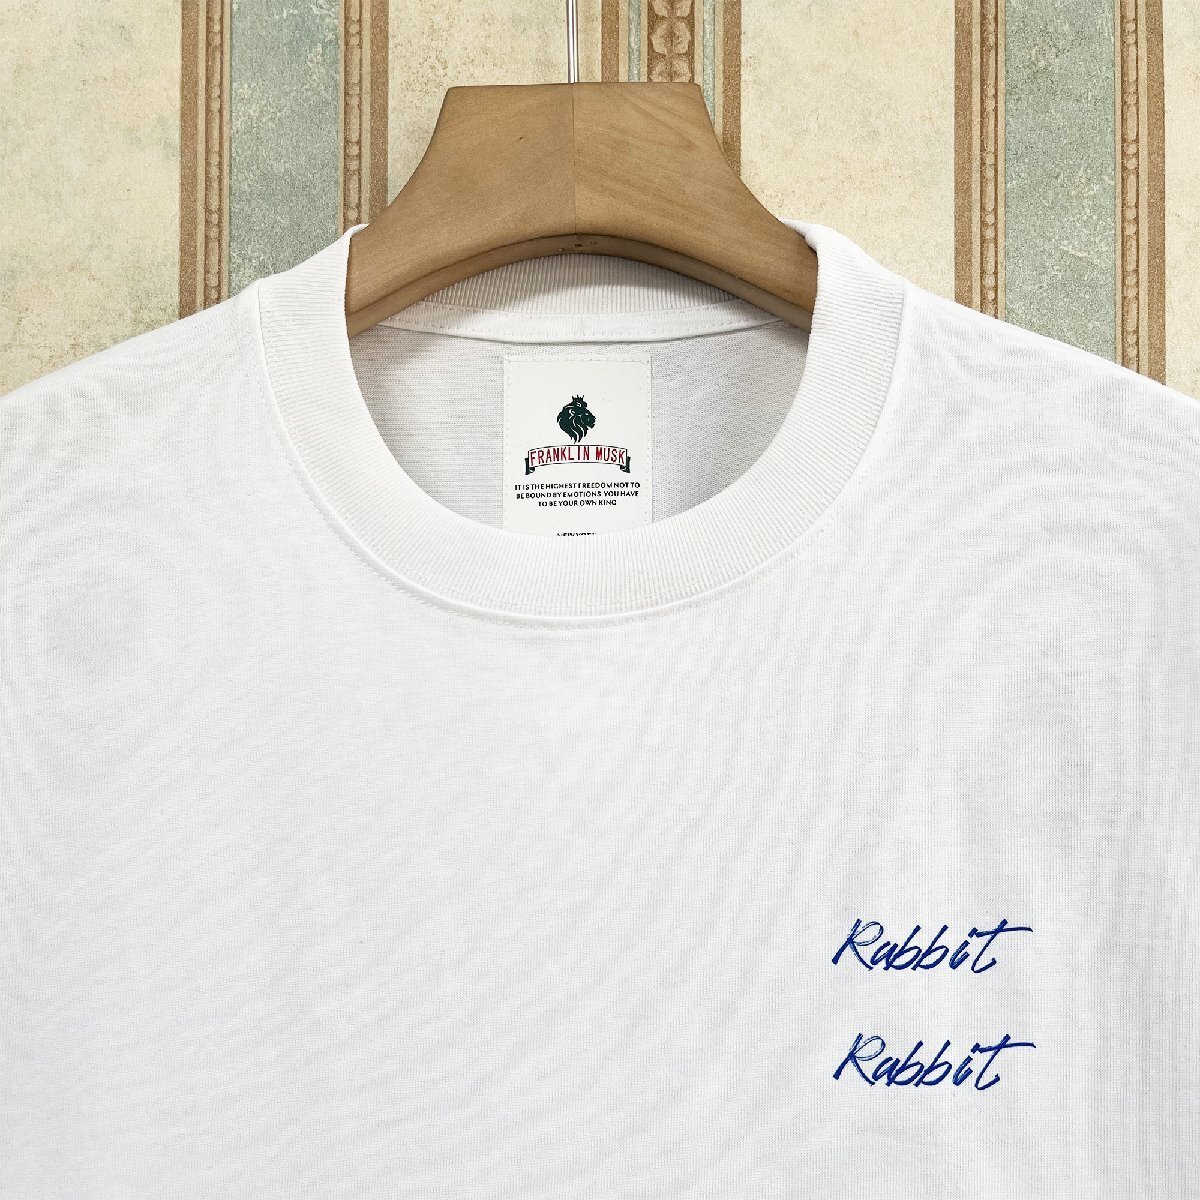 逸品 定価2万 FRANKLIN MUSK・アメリカ・ニューヨーク発 半袖Tシャツ 上質 薄手 吸湿 ウサギ カットソー スタイリッシュ 日常 サイズ4_画像3